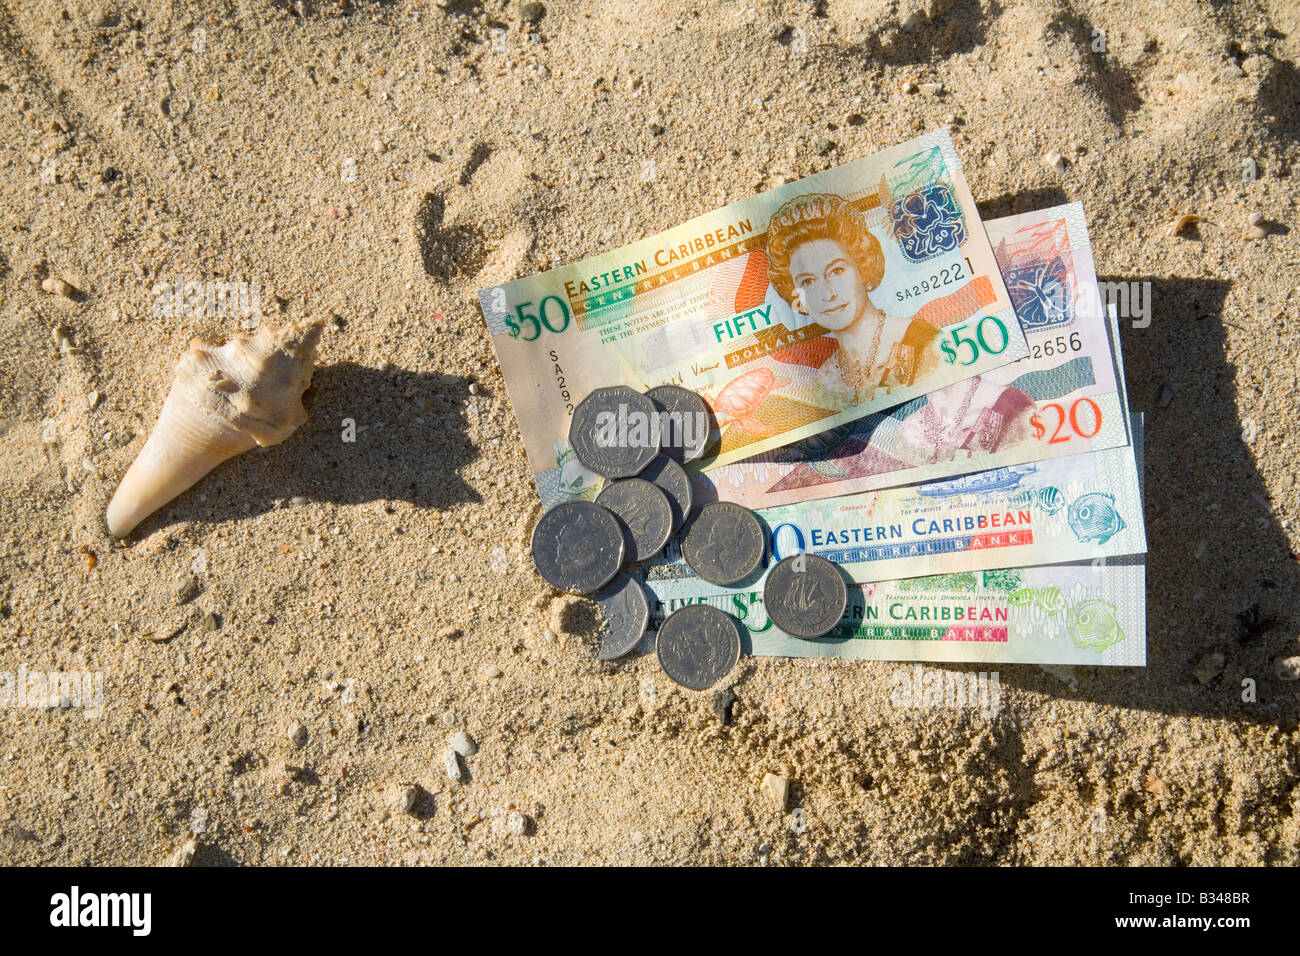 Caraibi denaro; est dei Caraibi valuta; banconote e monete e una shell sulla spiaggia, St Lucia, isole Windward Caraibi, West Indies Foto Stock